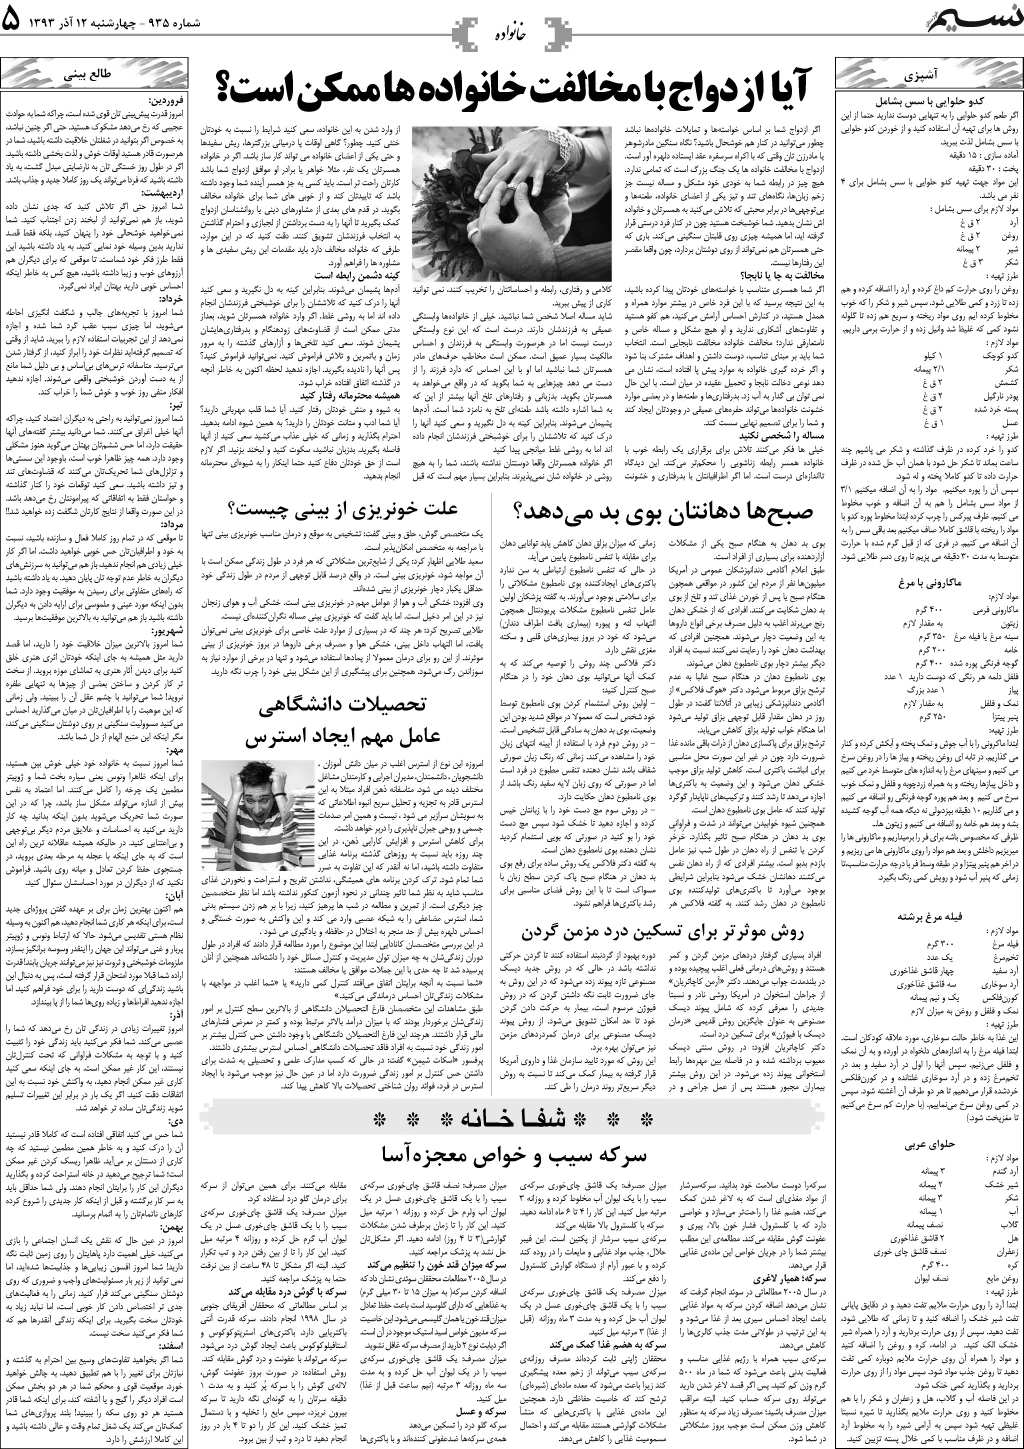 صفحه خانواده روزنامه نسیم شماره 935